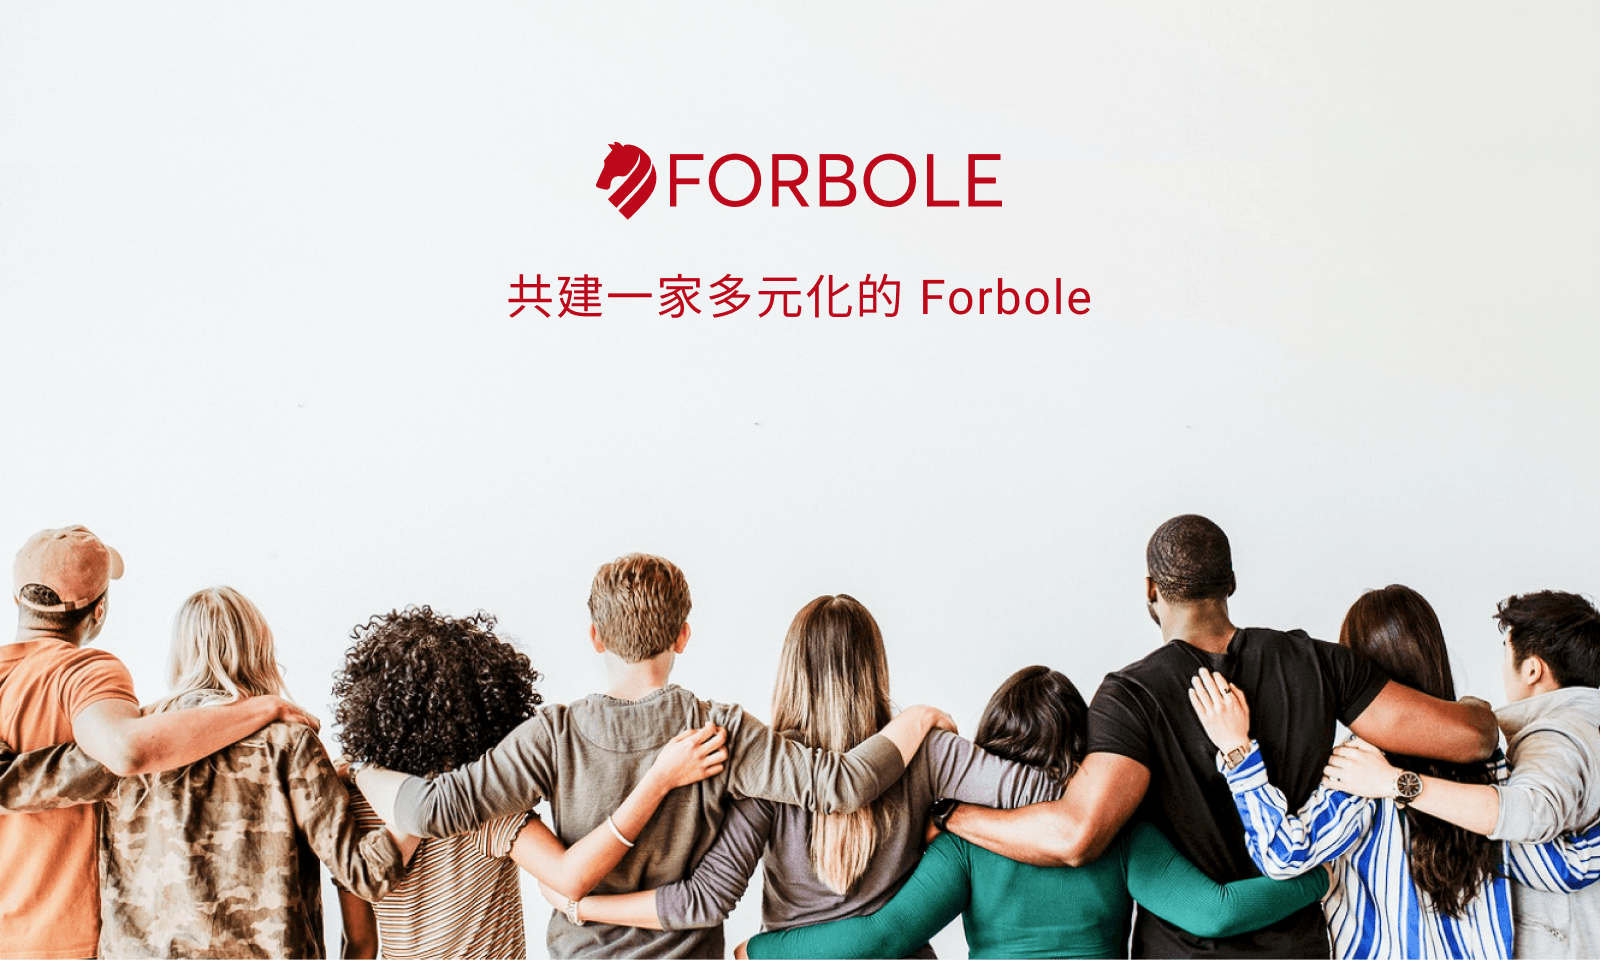 共建一家多元化的 Forbole